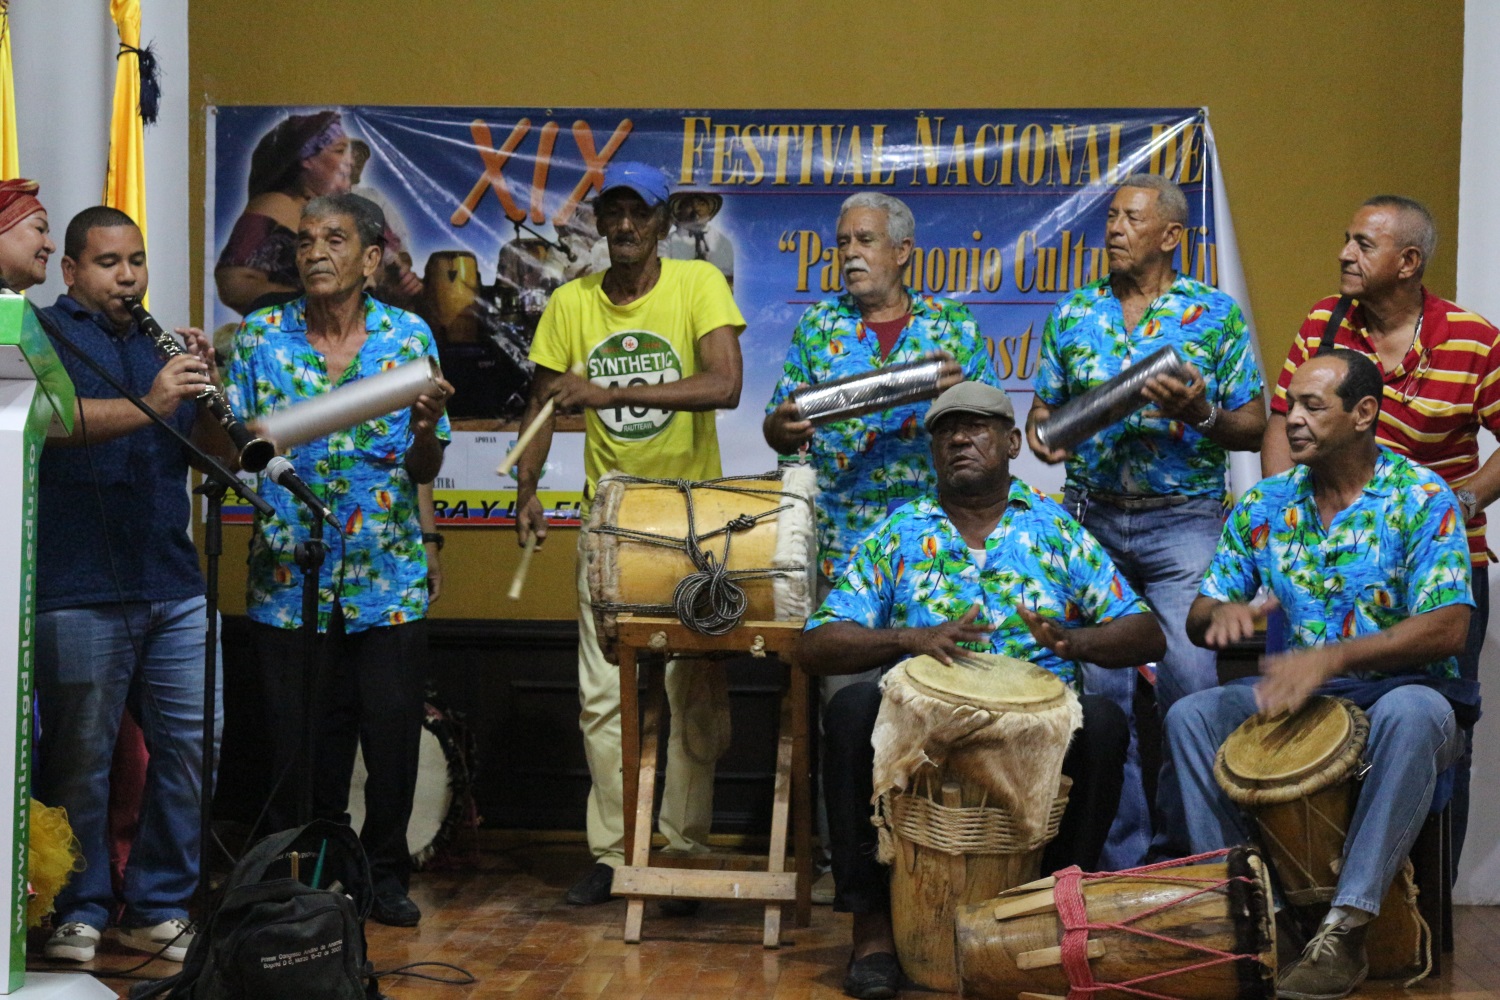 Las tamboras samarias vuelven a sonar gracias al XIX Festival Nacional de la Guacherna